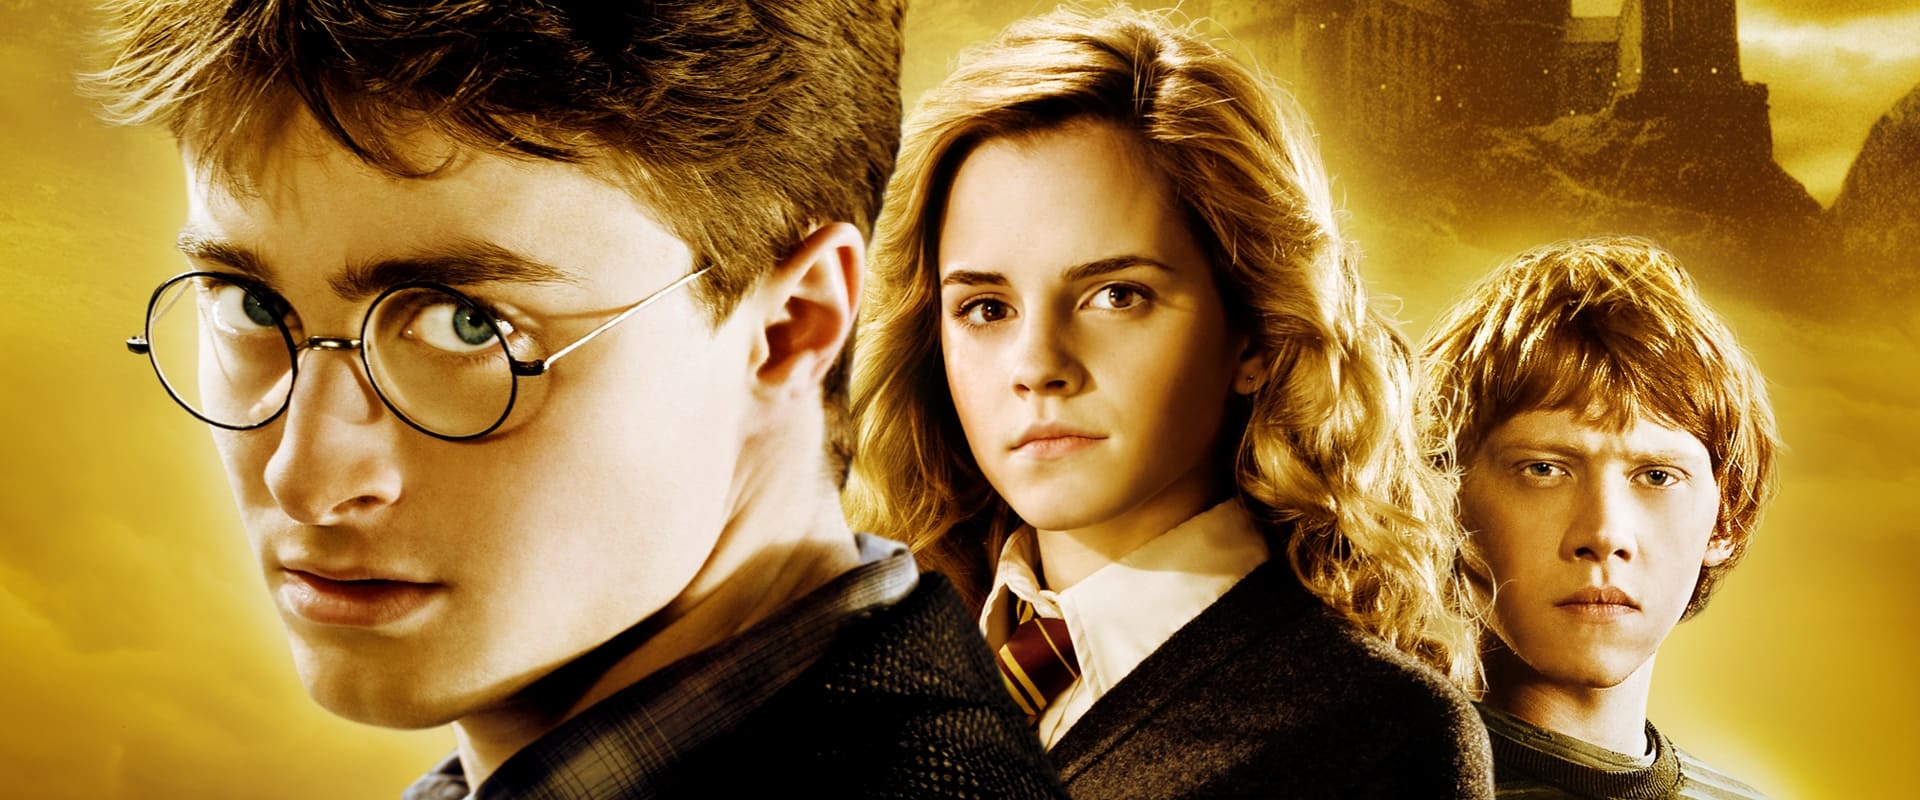 Harry Potter e il principe mezzosangue [HD] (2009)